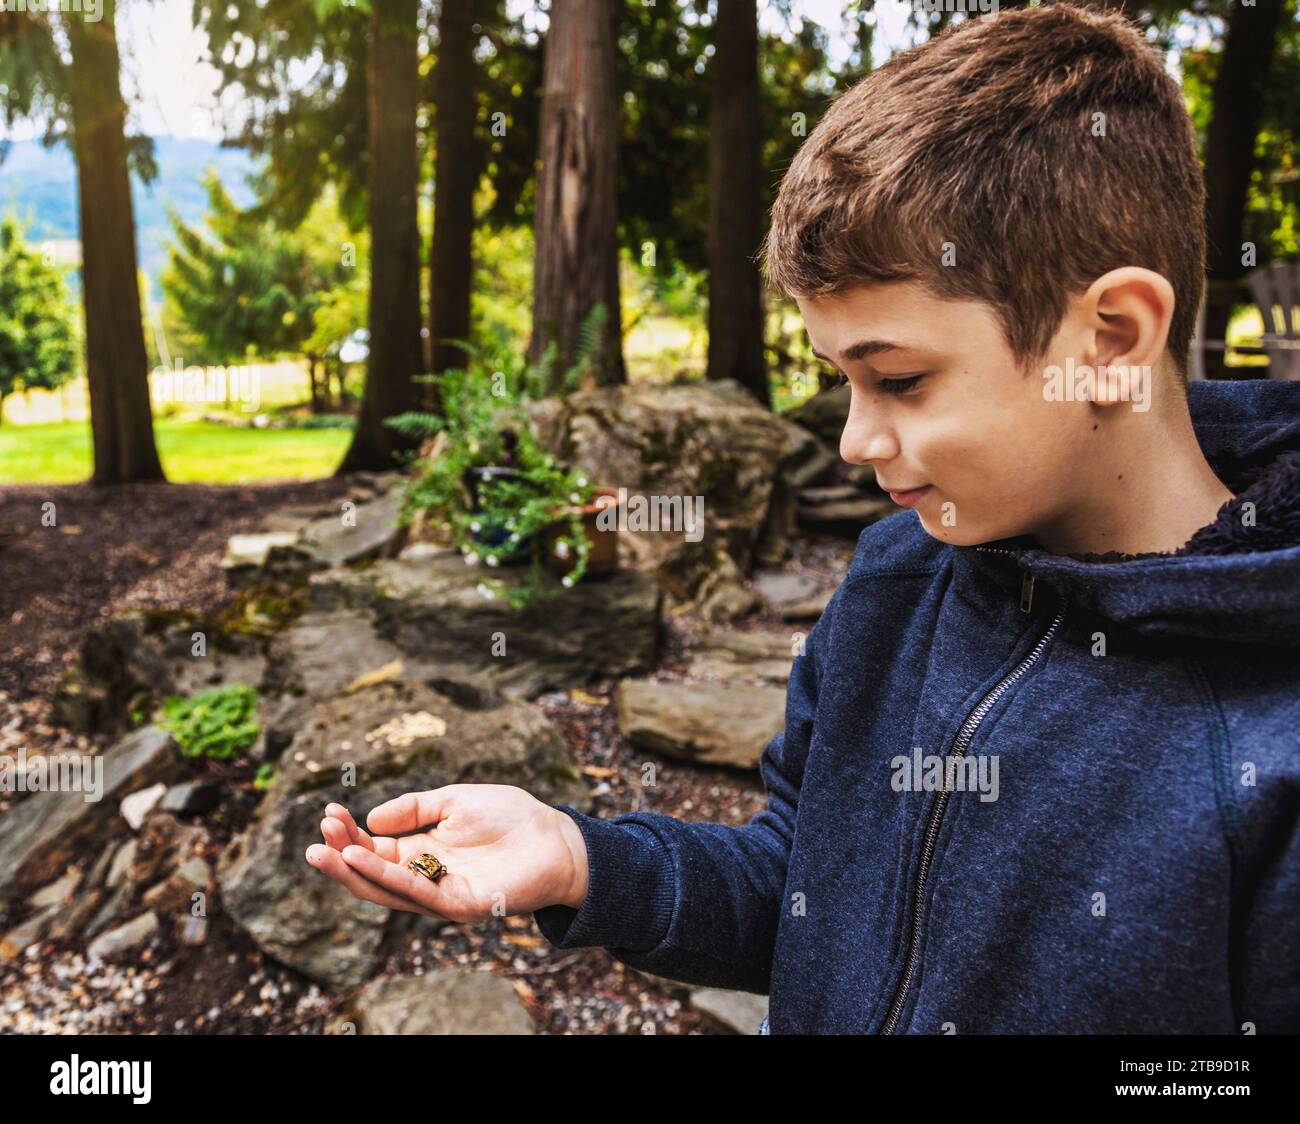 Ritratto ravvicinato di un ragazzo che tiene in mano una rana mentre è in vacanza; Sicamous, British Columbia, Canada Foto Stock